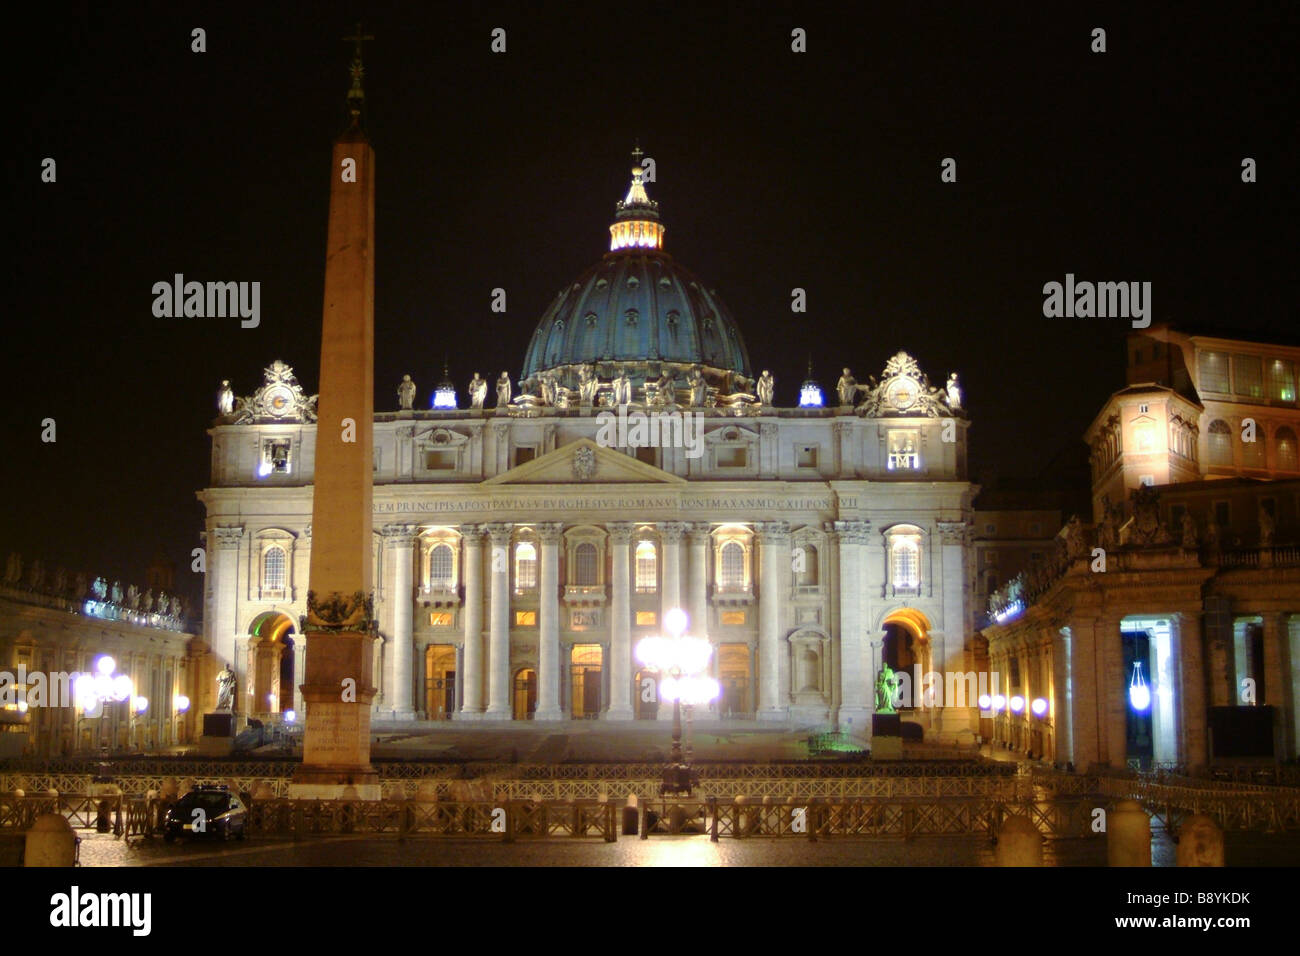 Piazza San Pietro, Rome, Latium, Italie Banque D'Images